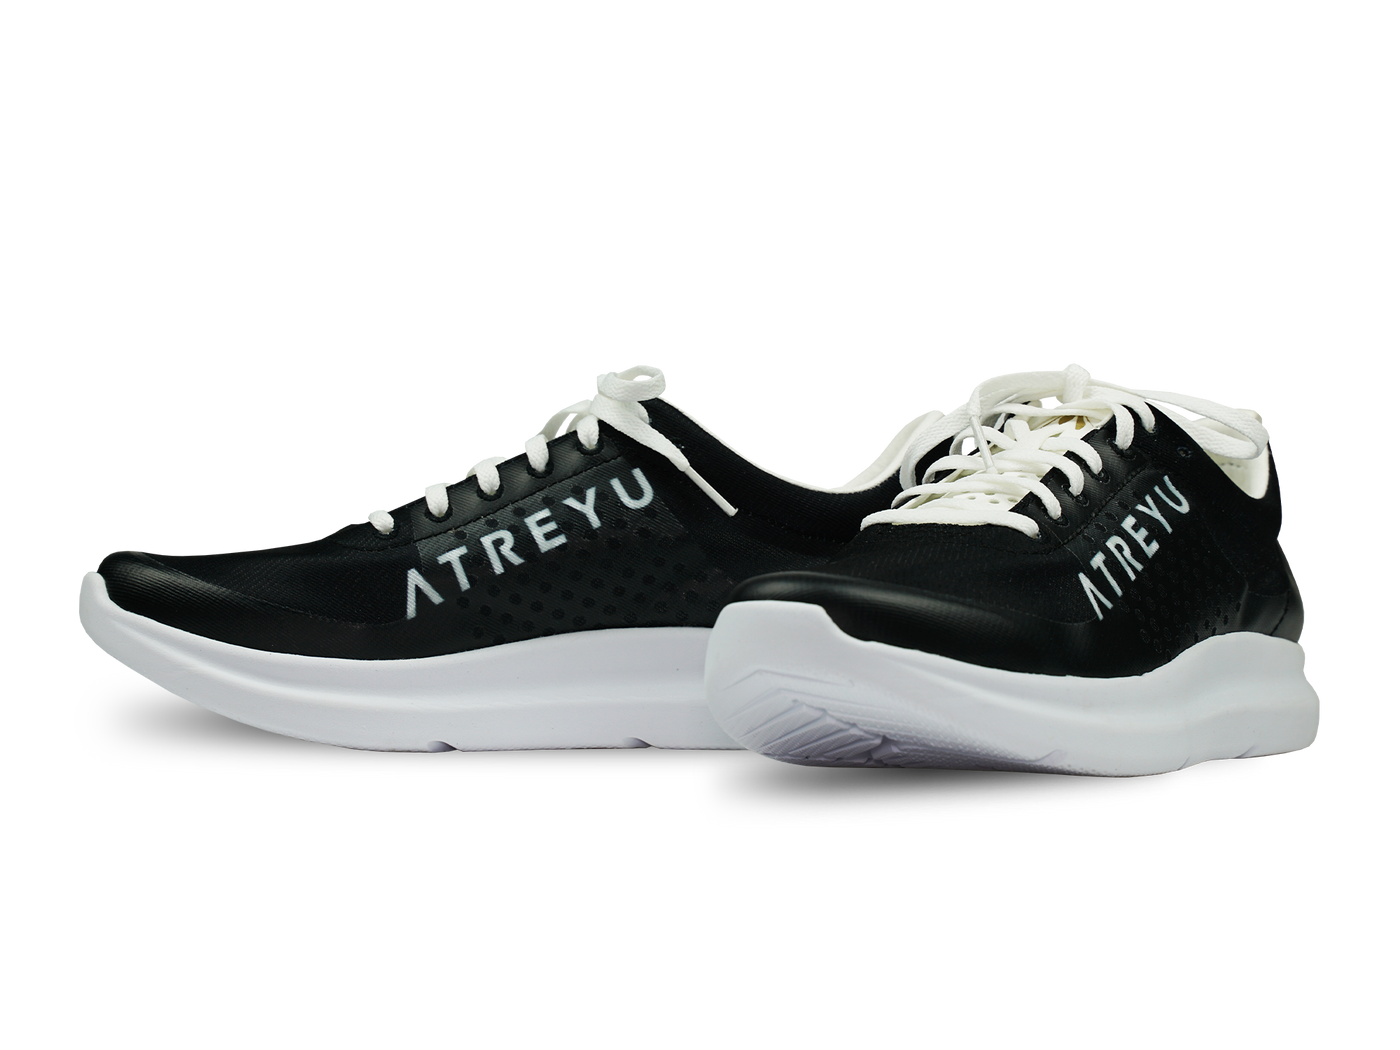 Atreyu Base Model - Lightweight running shoes pair black